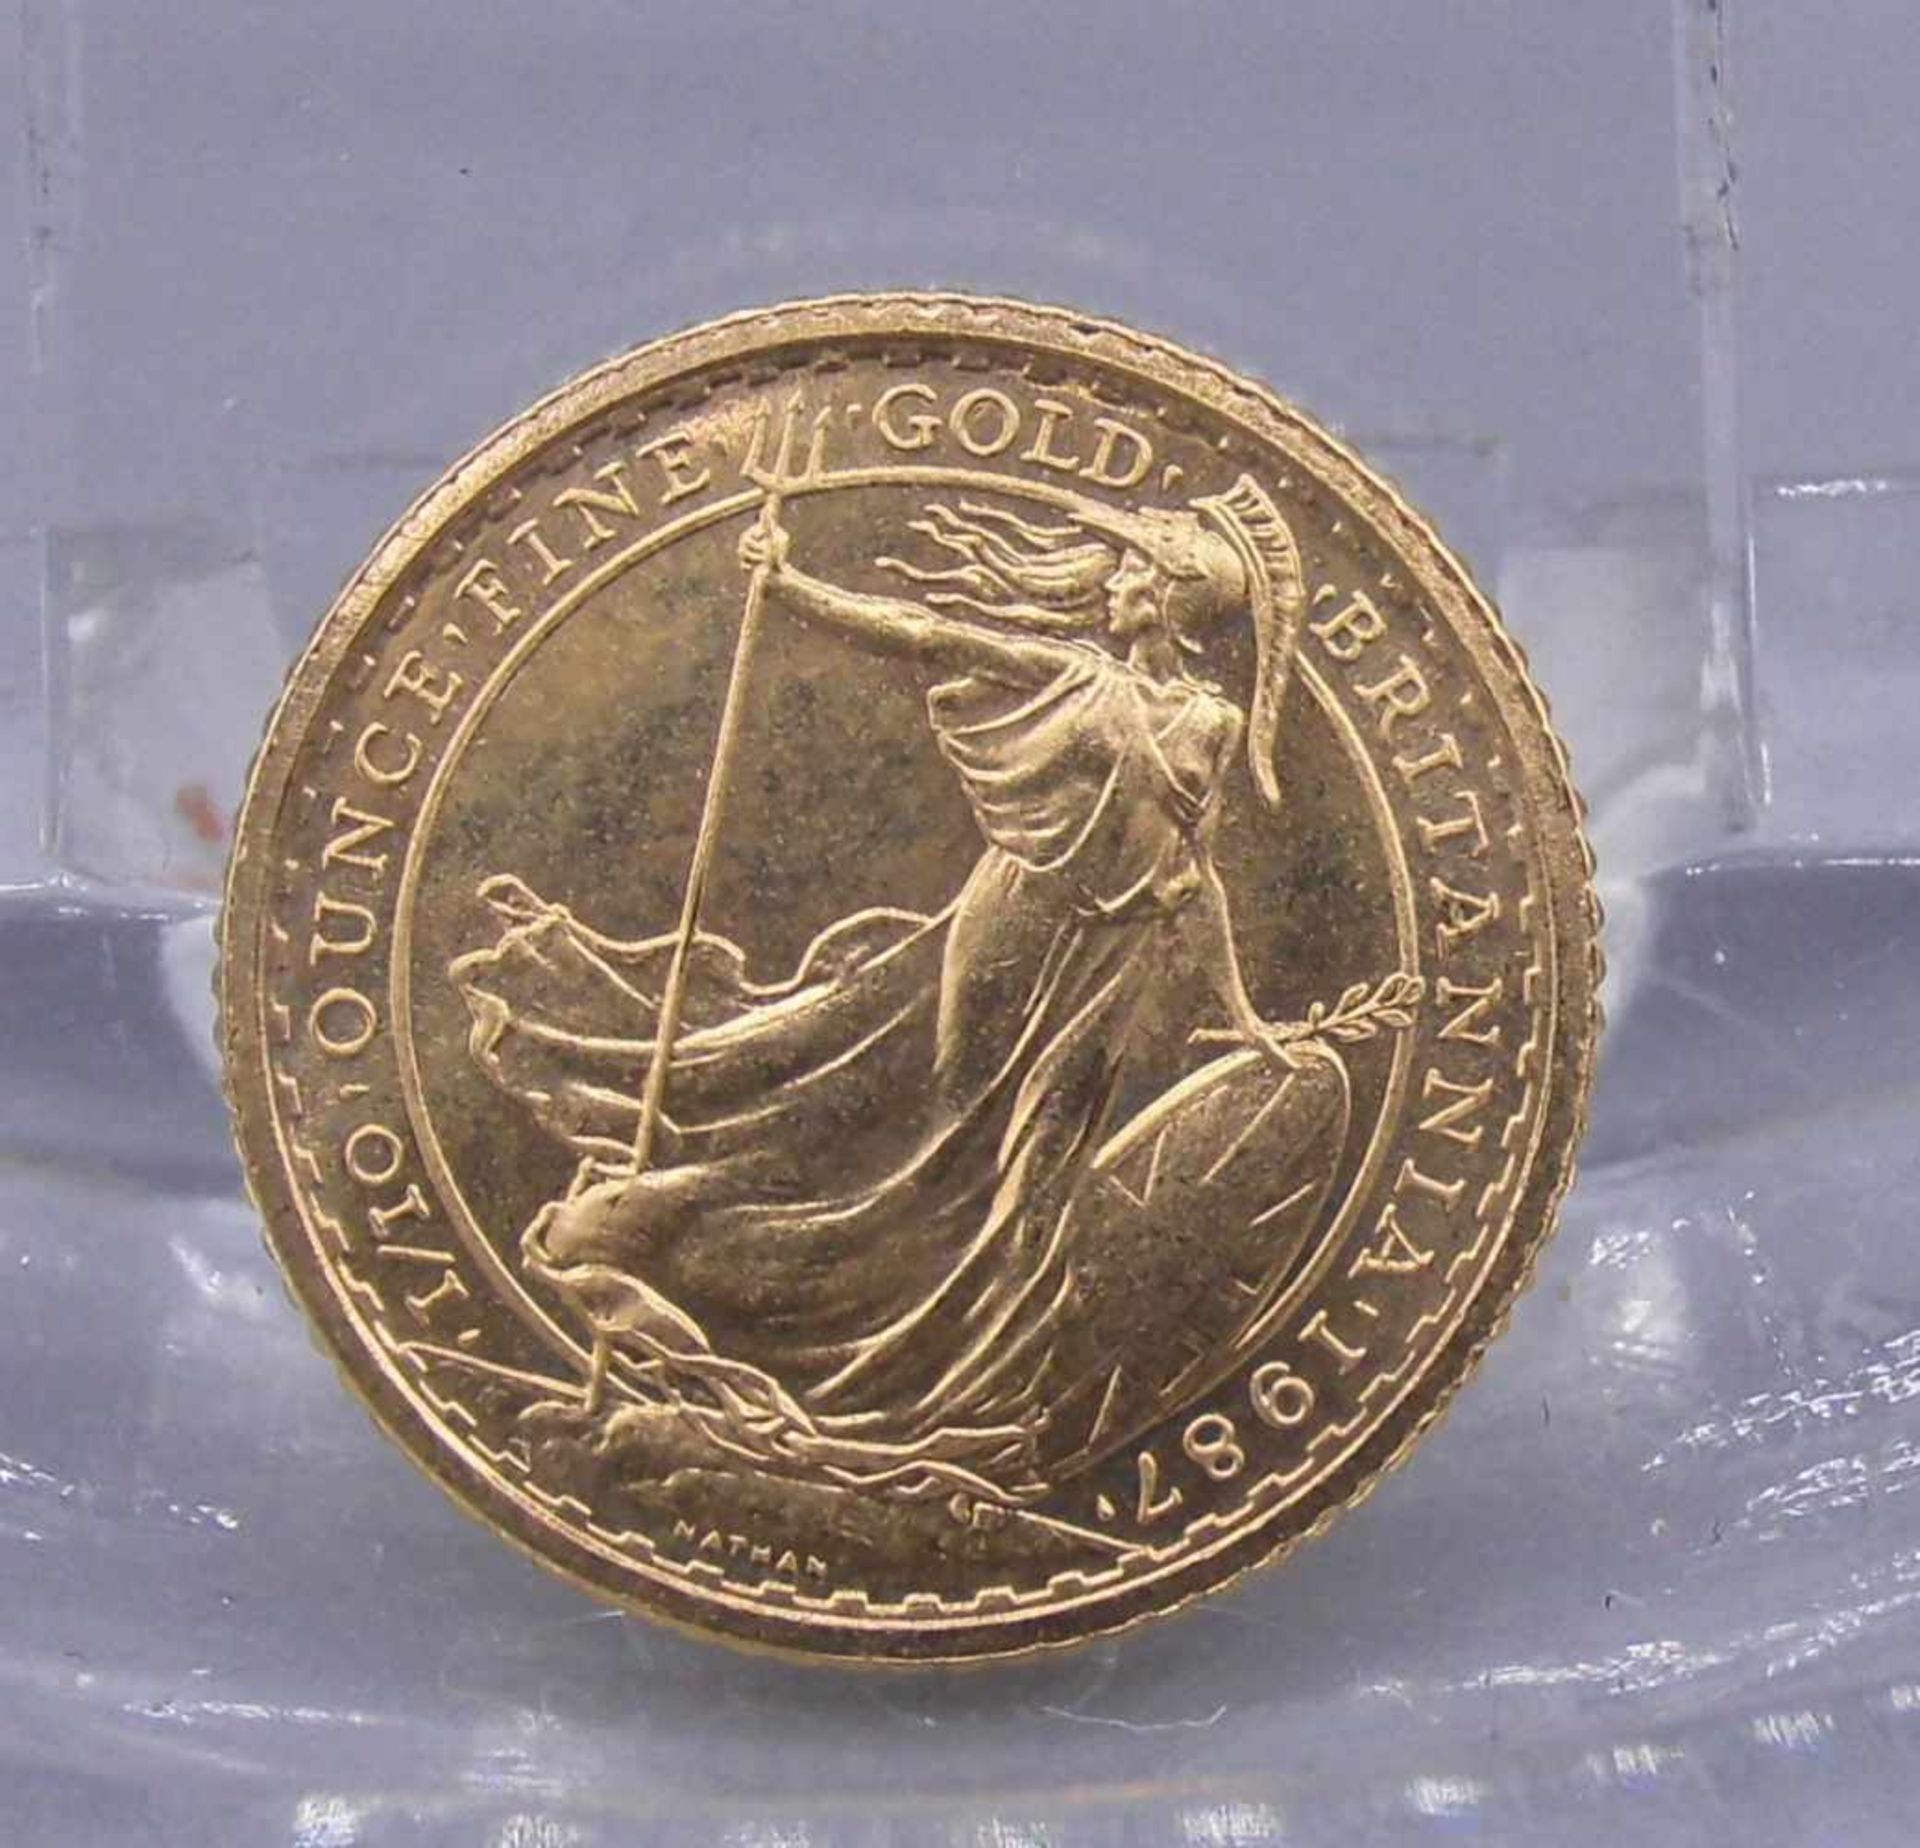 GOLDMÜNZE "BRITANNIA 10 POUNDS" / coin, 716er Gold (ca. 3,5 g; Feingehalt: 3,2 g). Avers: Büste